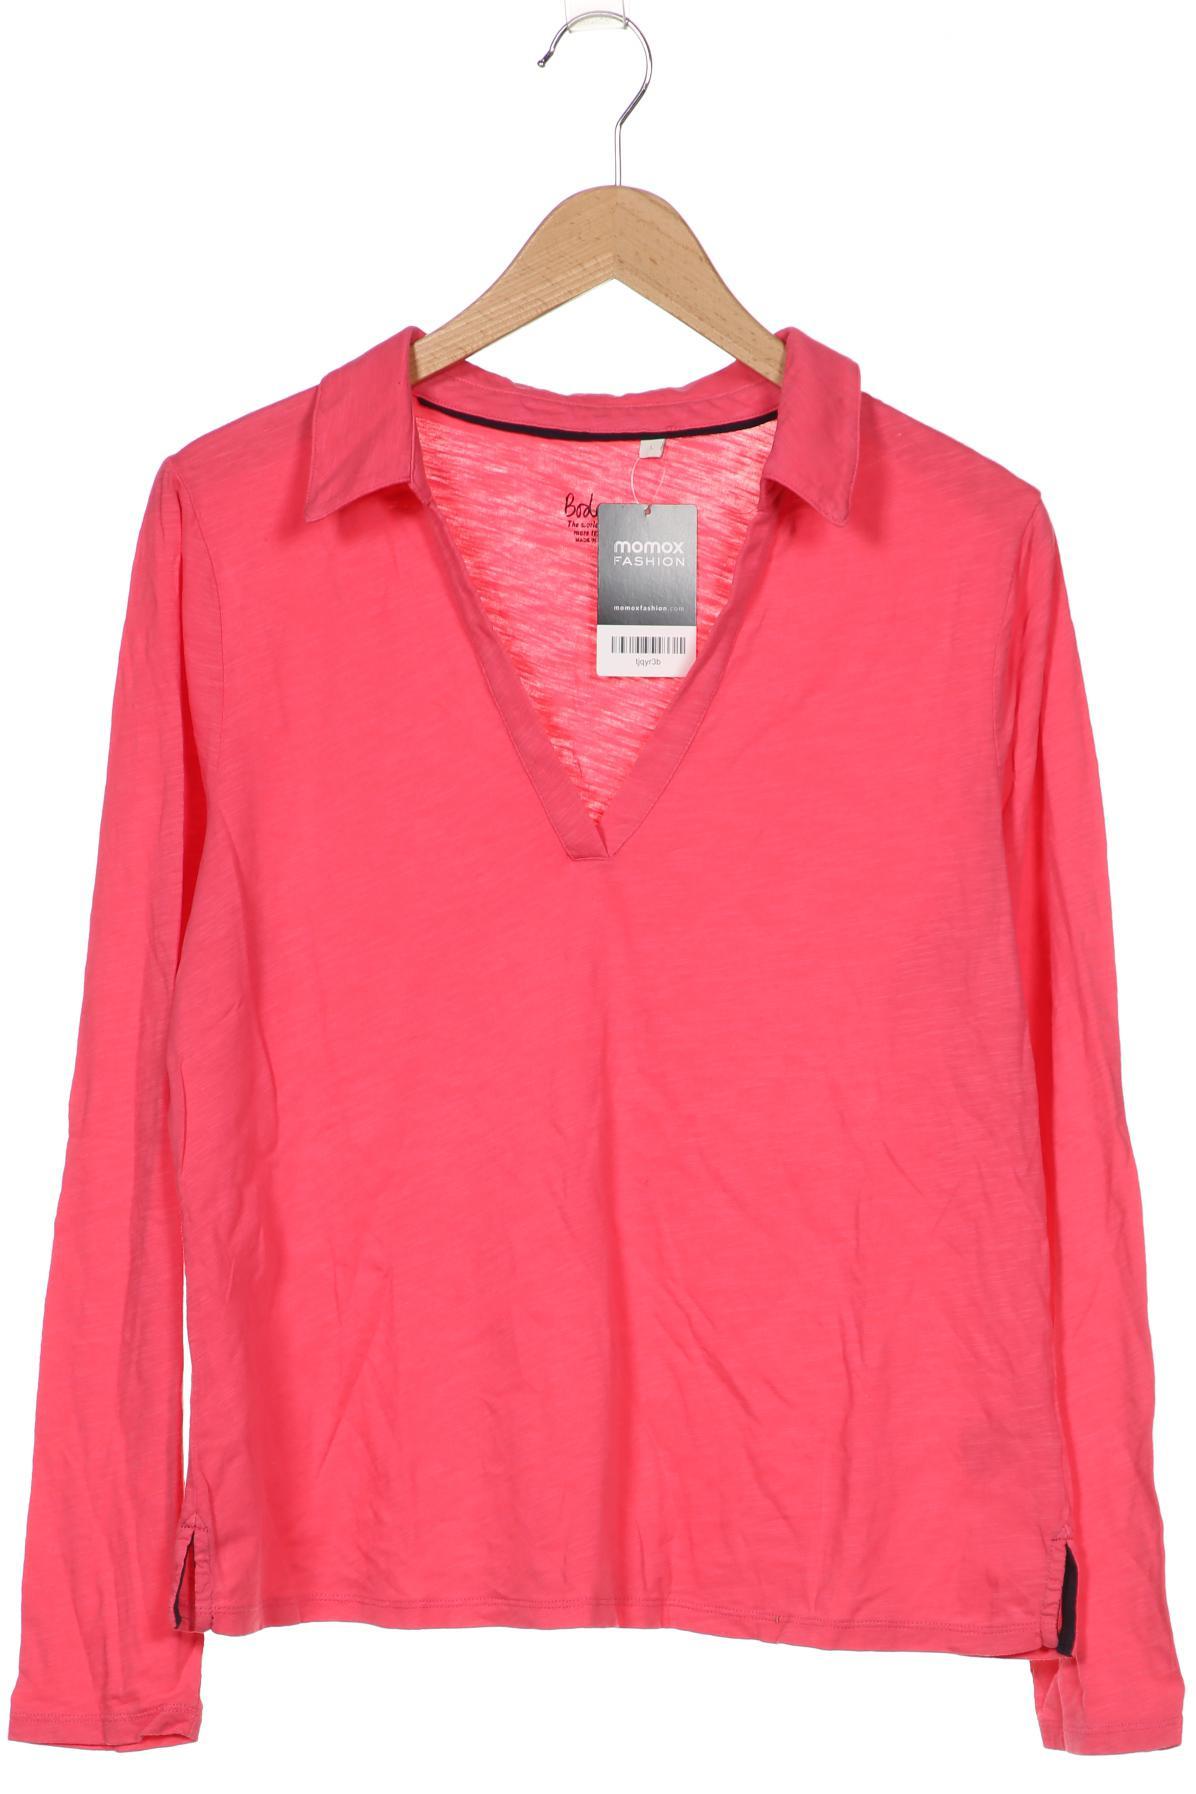 Boden Damen Poloshirt, pink, Gr. 64 von Boden